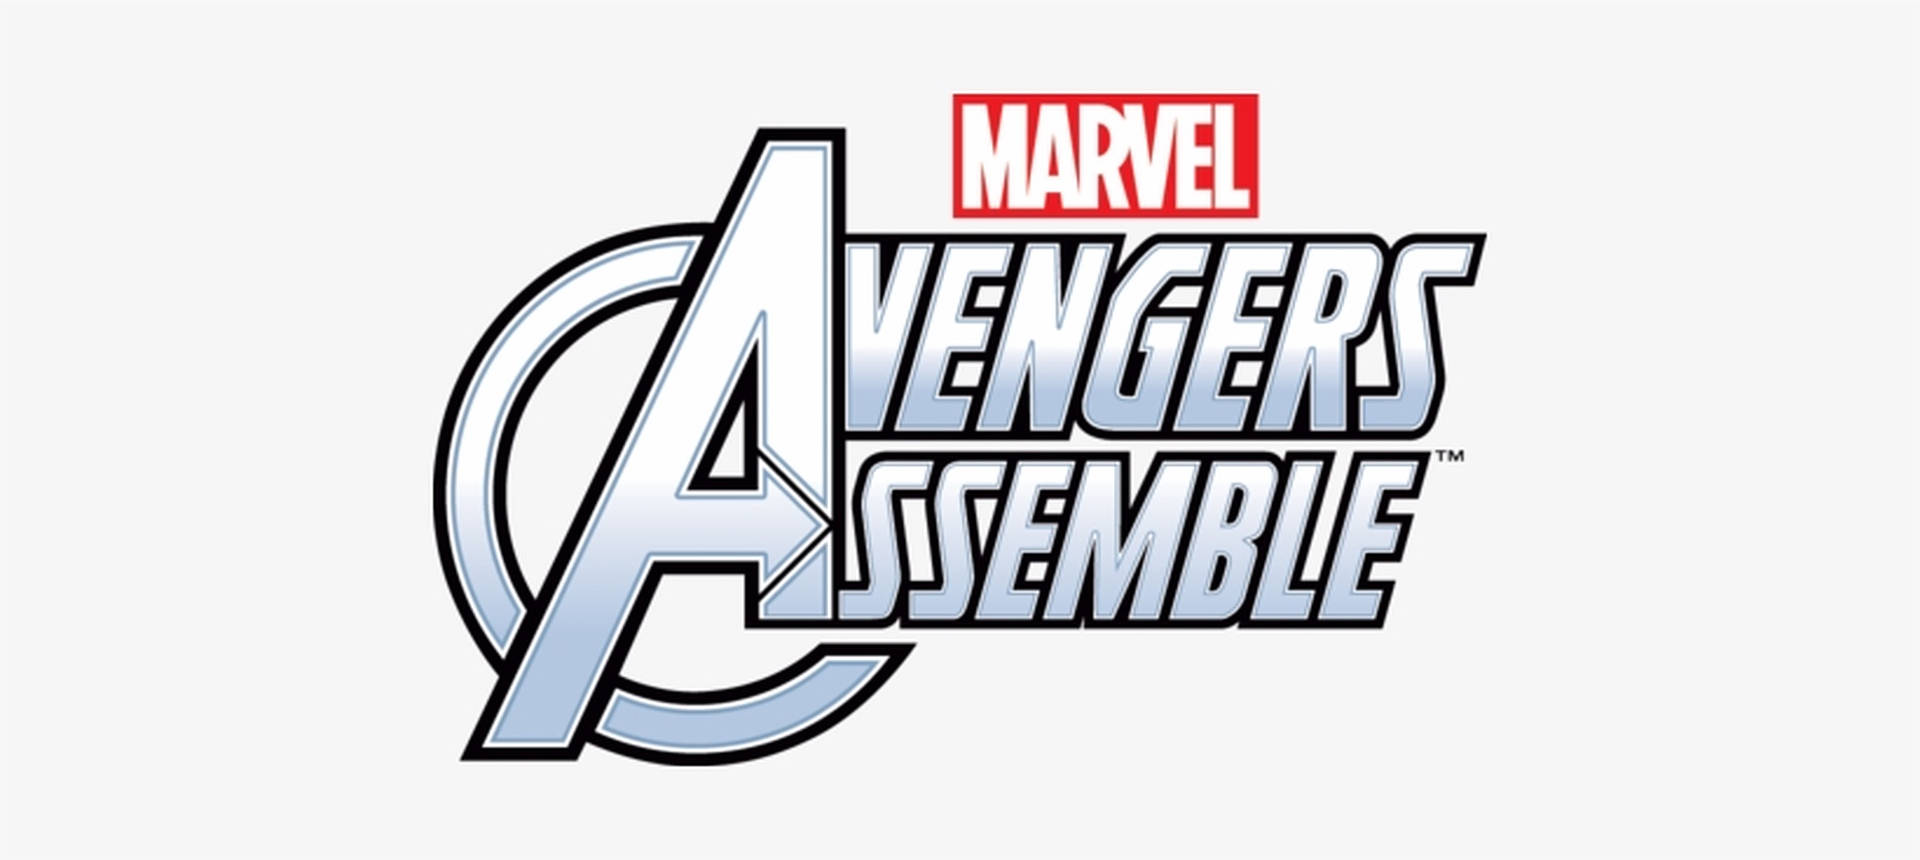 Avengers,vereinigt Euch! Weißes Logo. Wallpaper